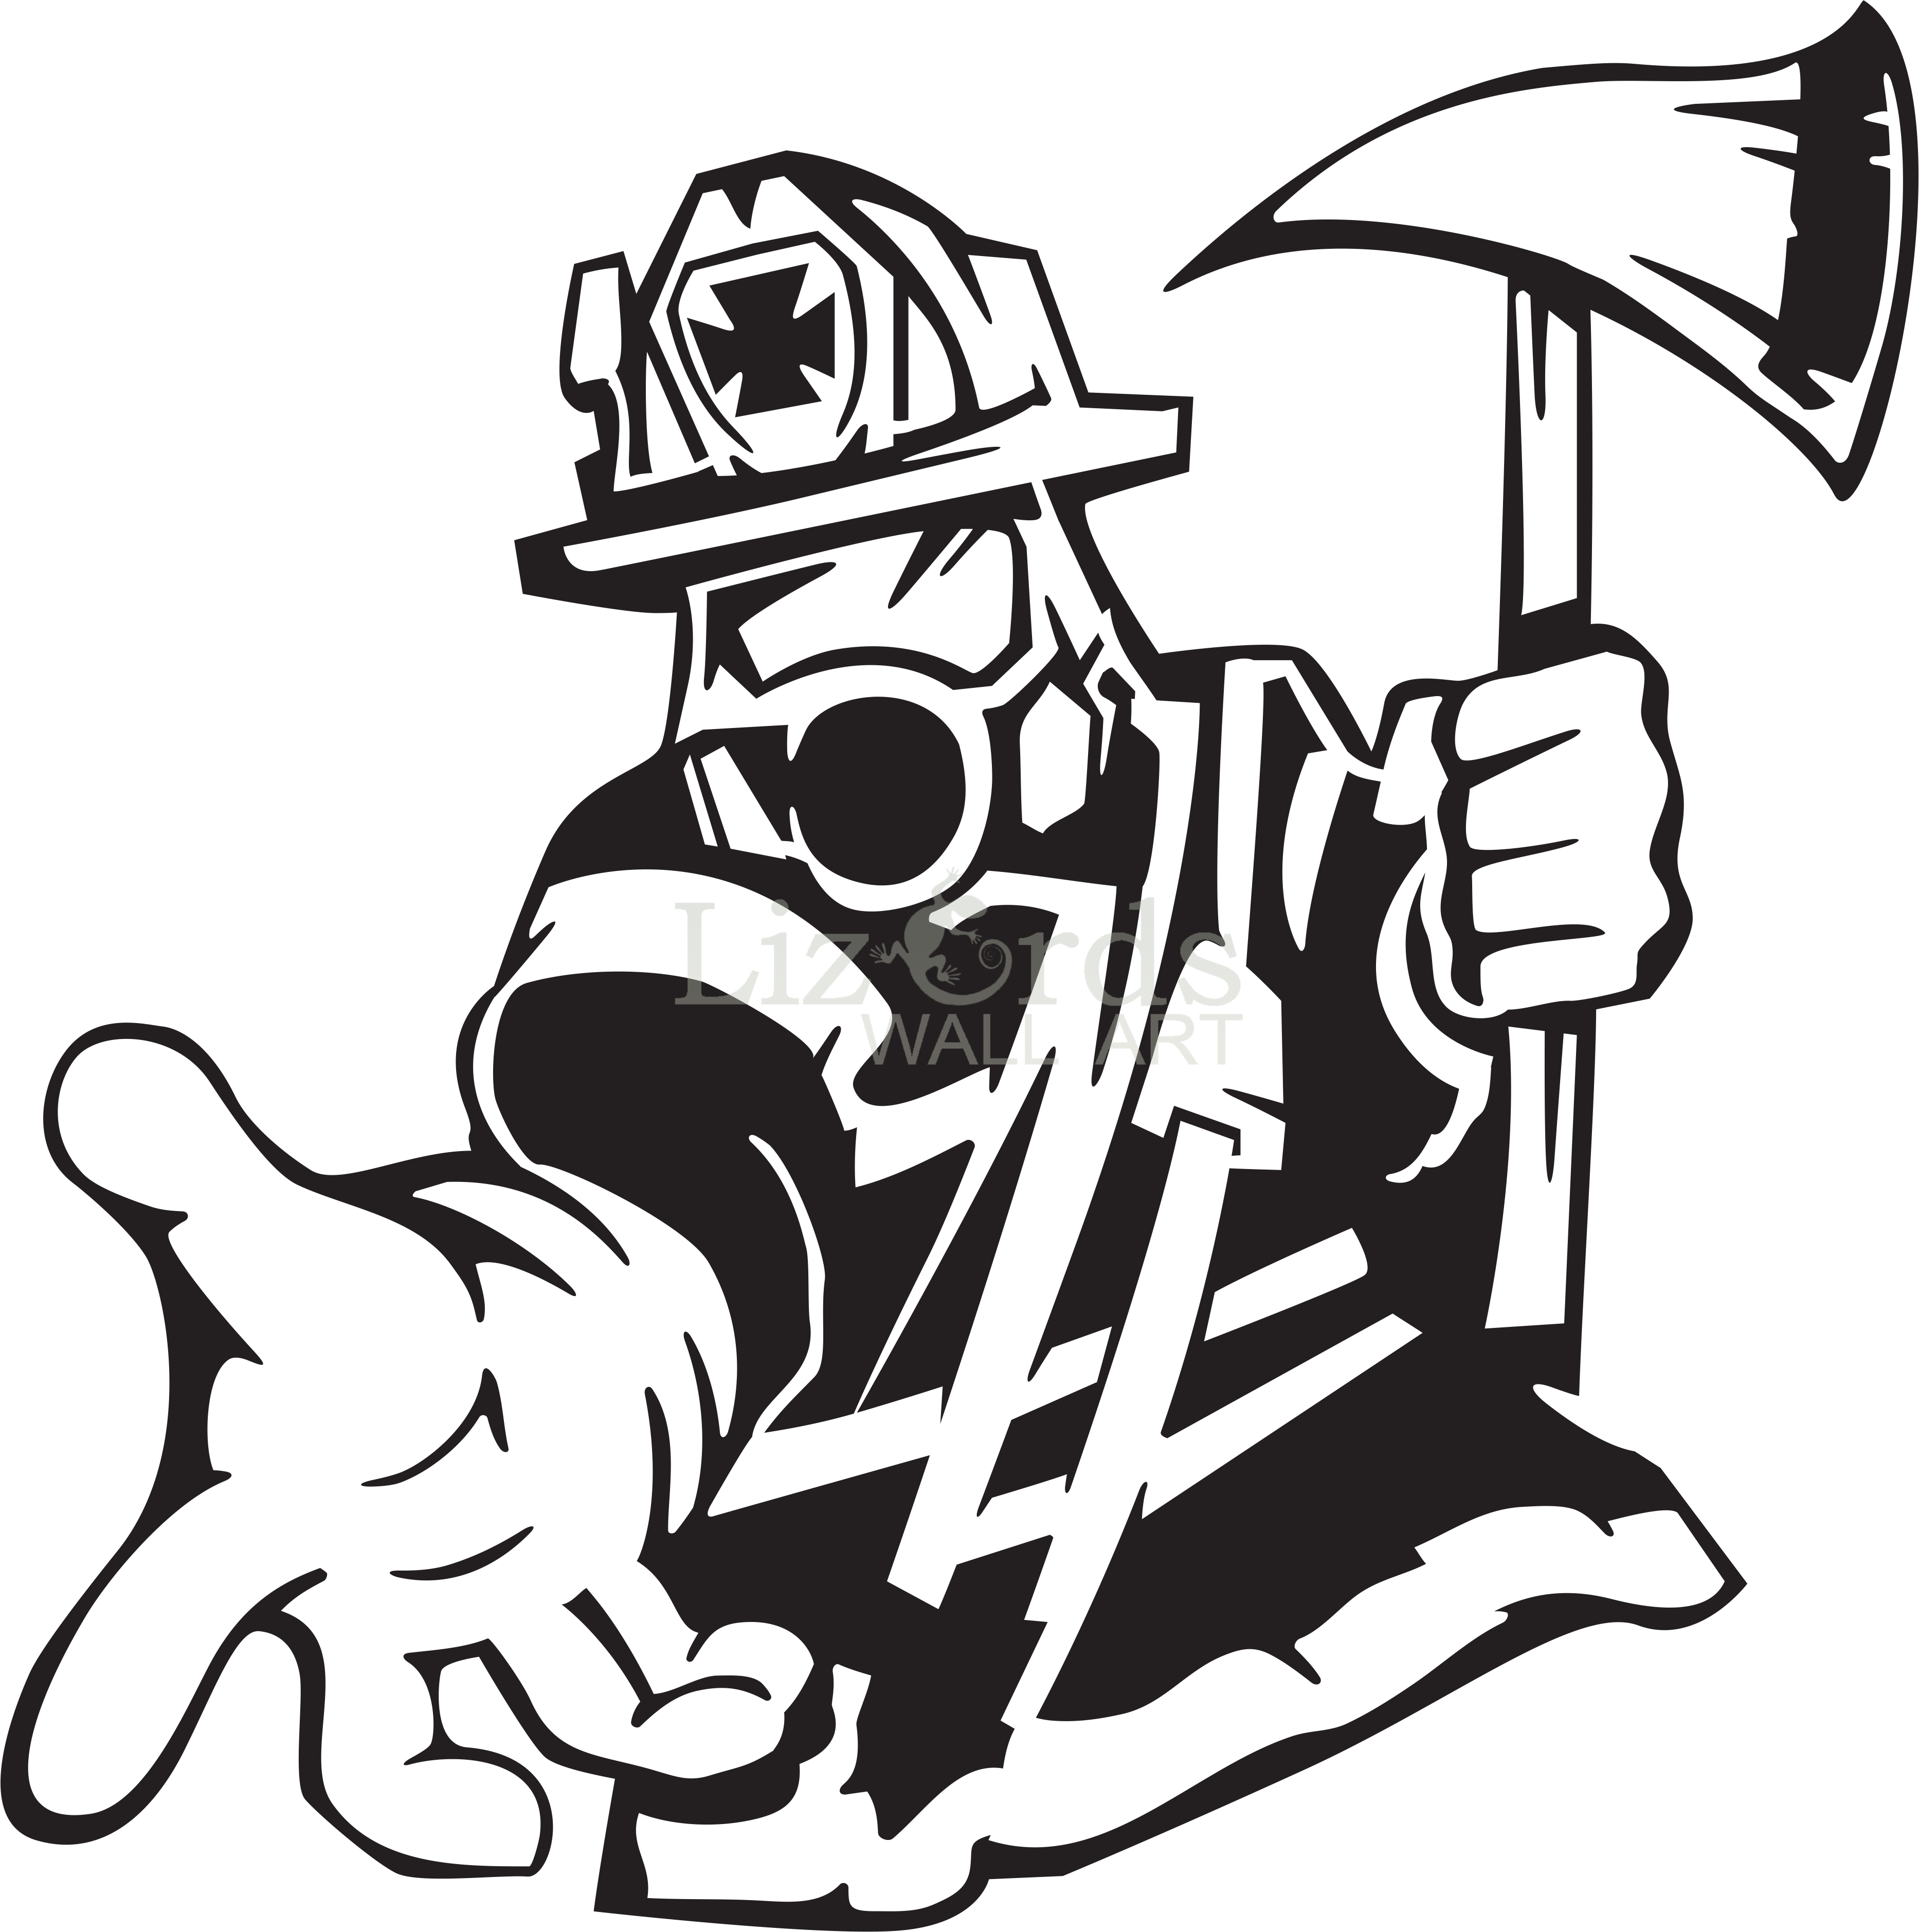 firefighter-text-sticker-line-art-silhouette-fireman-png-download